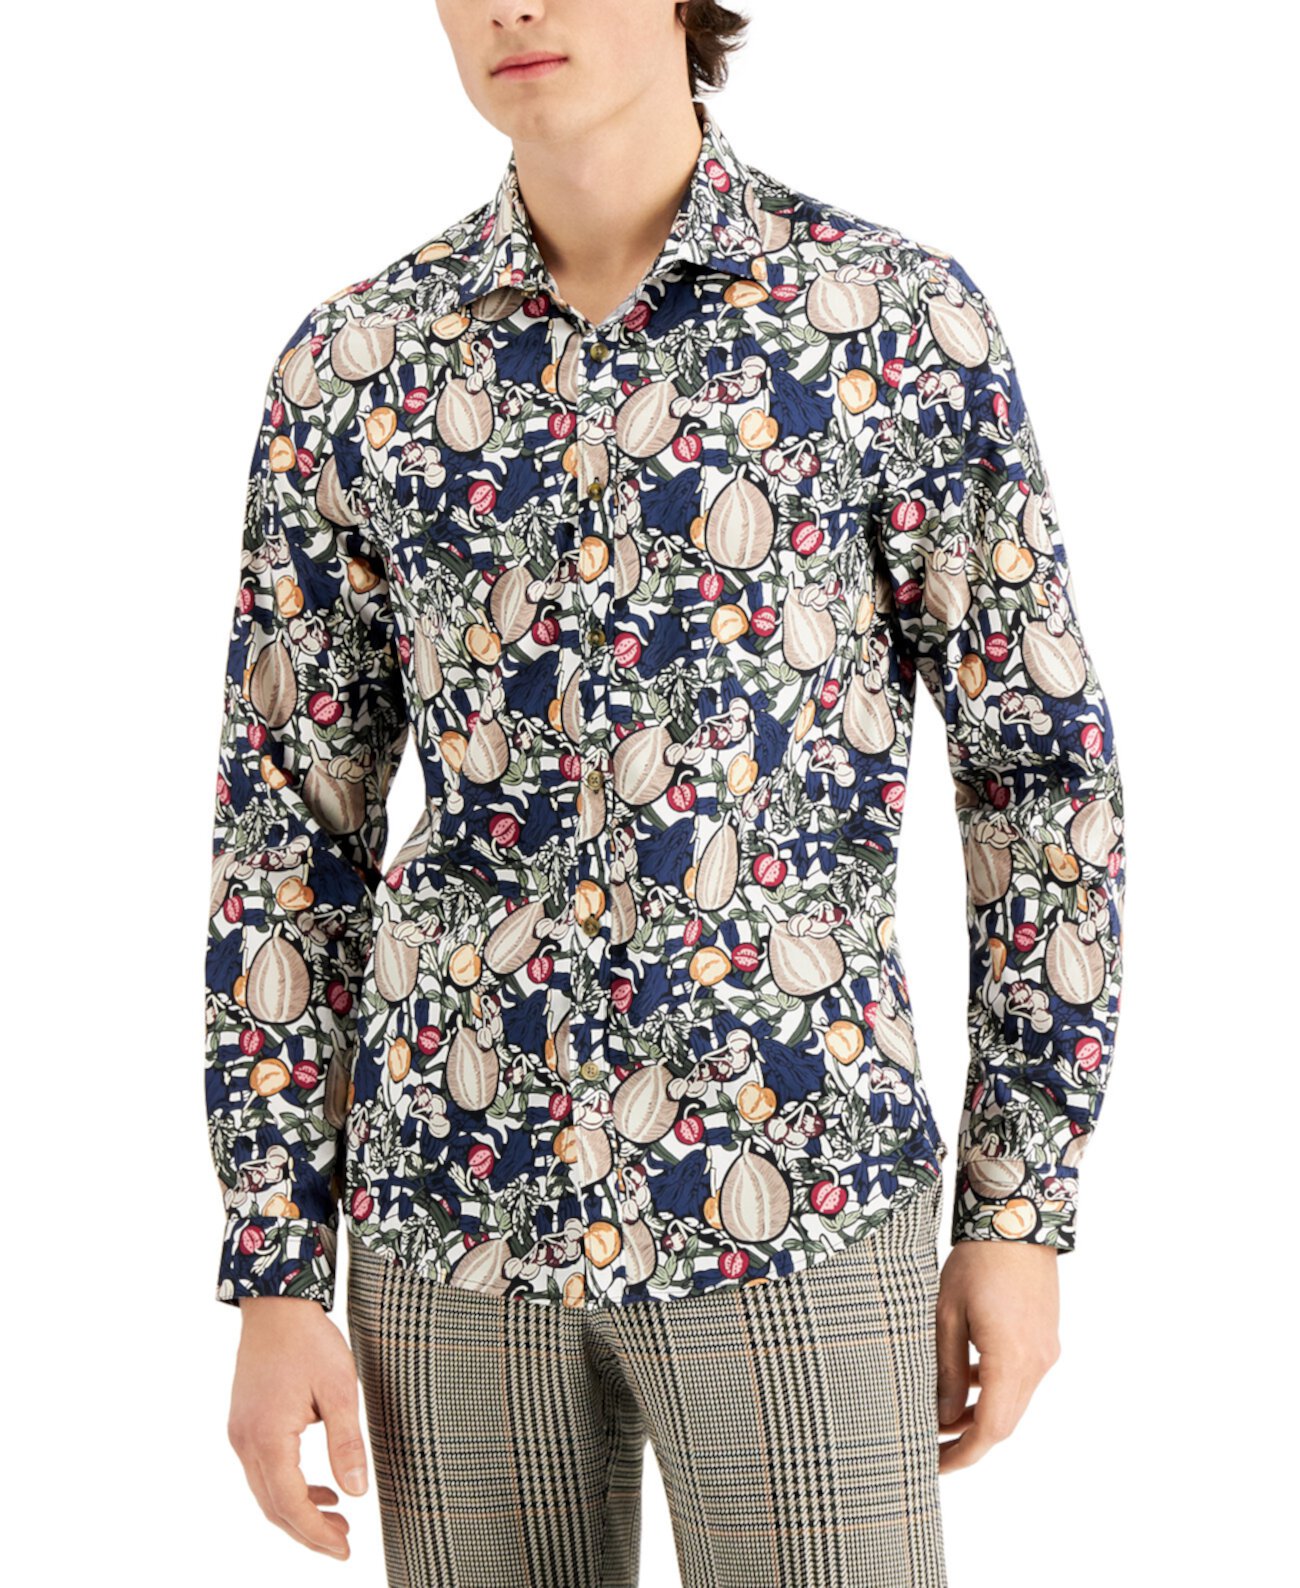 Мужская рубашка с расстегнутым воротником Nuts and Berries ограниченной серии Paisley & Gray